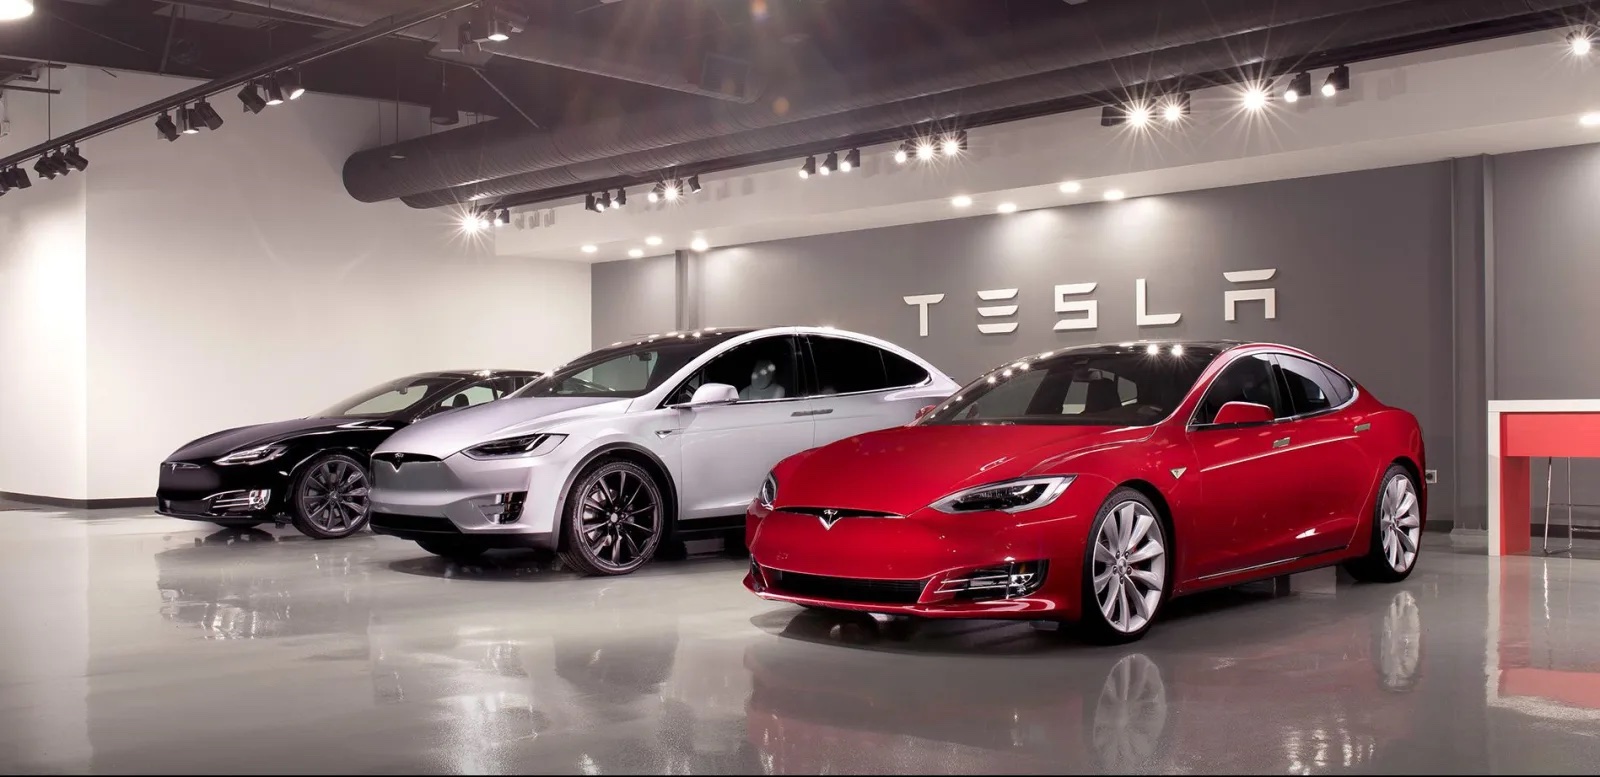 Tesla công bố doanh số kỷ lục nhưng “canh bạc” giảm giá không đạt được kì vọng